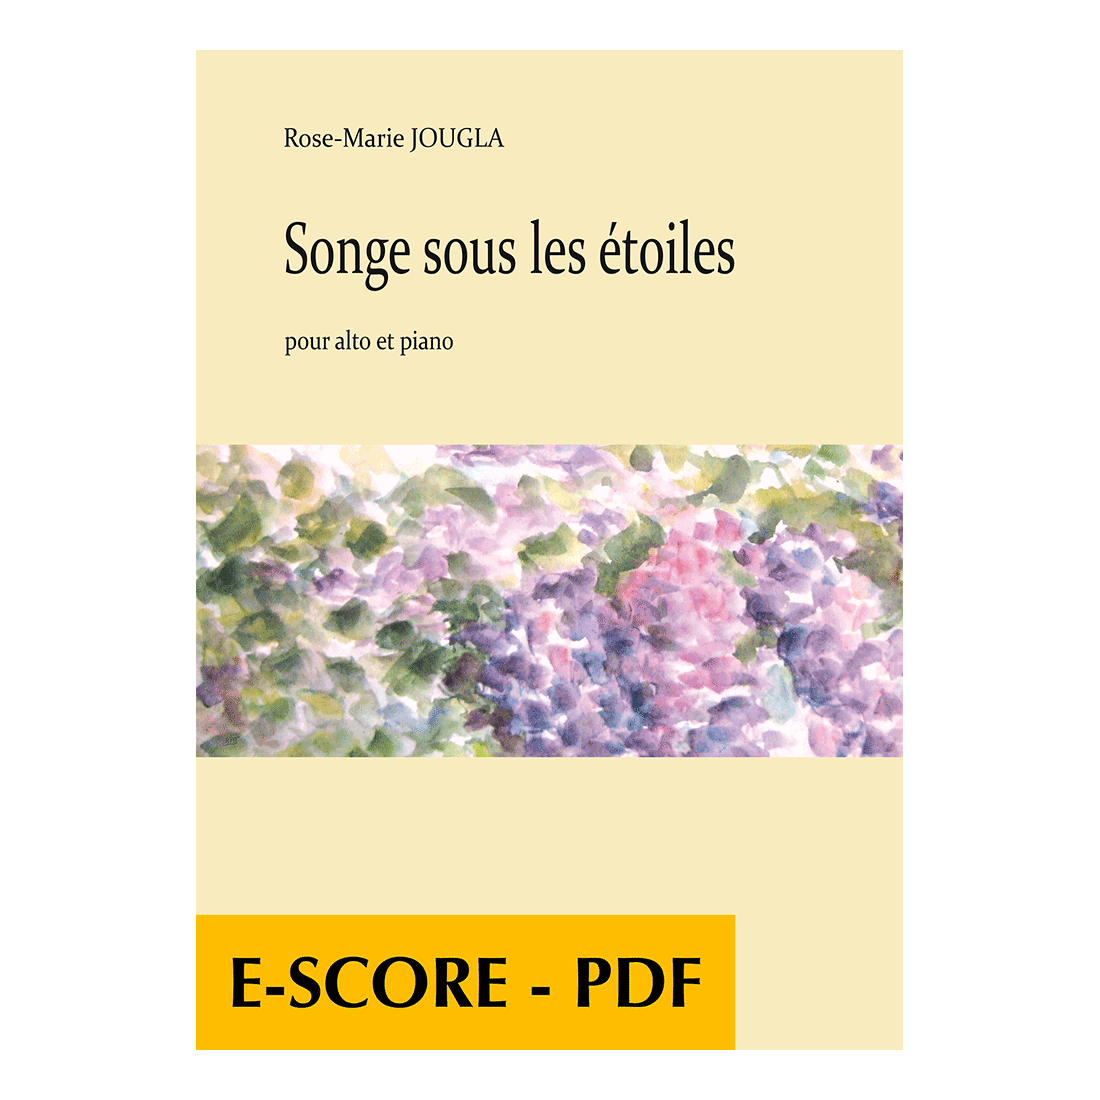 Songe sous les étoiles for viola and piano - E-score PDF